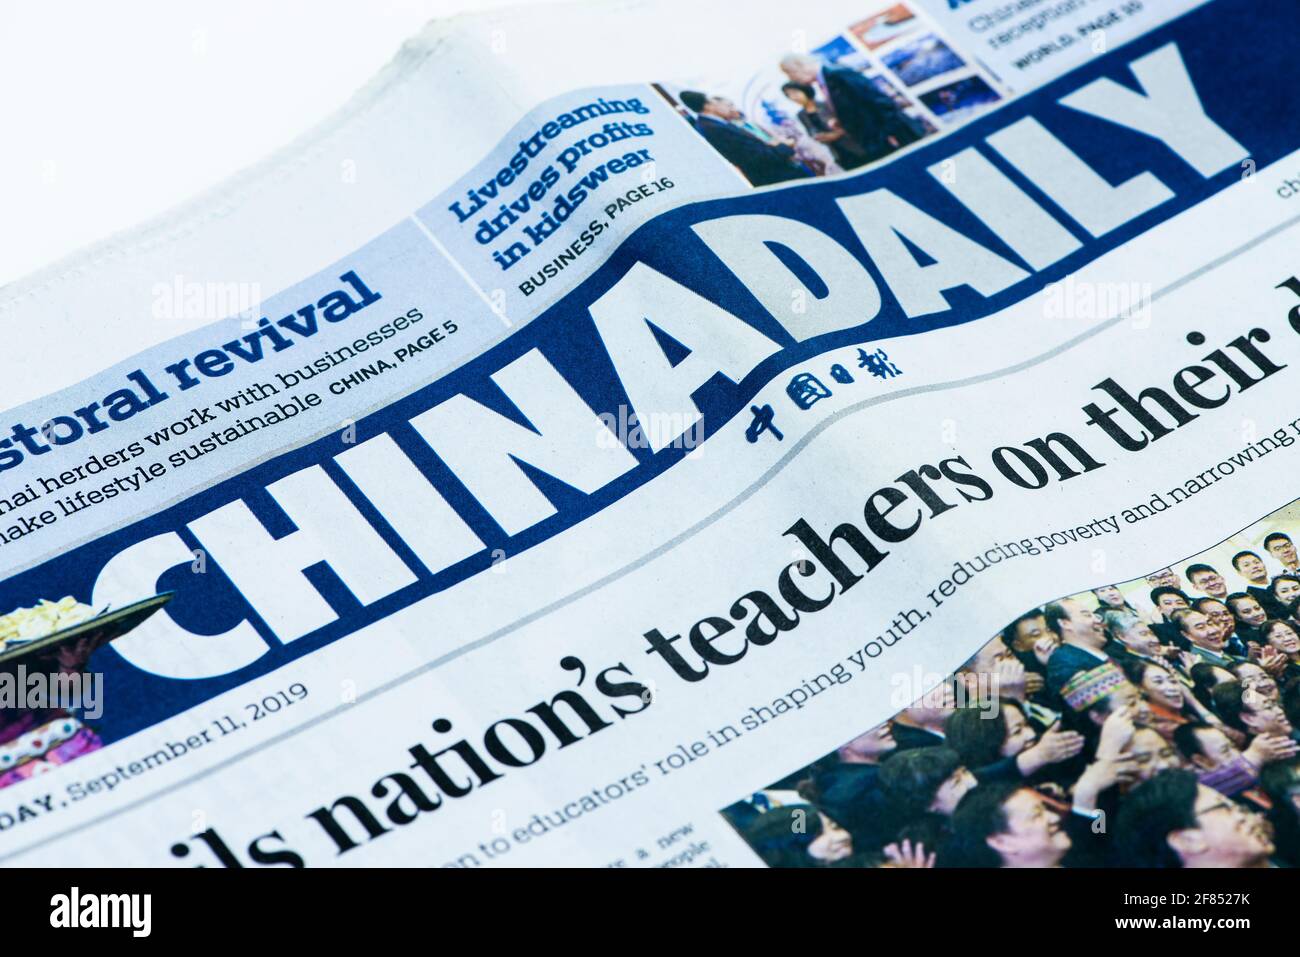 China Daily, un journal de langue anglaise publié par le département de publicité du Parti communiste de Chine (PCC) Banque D'Images